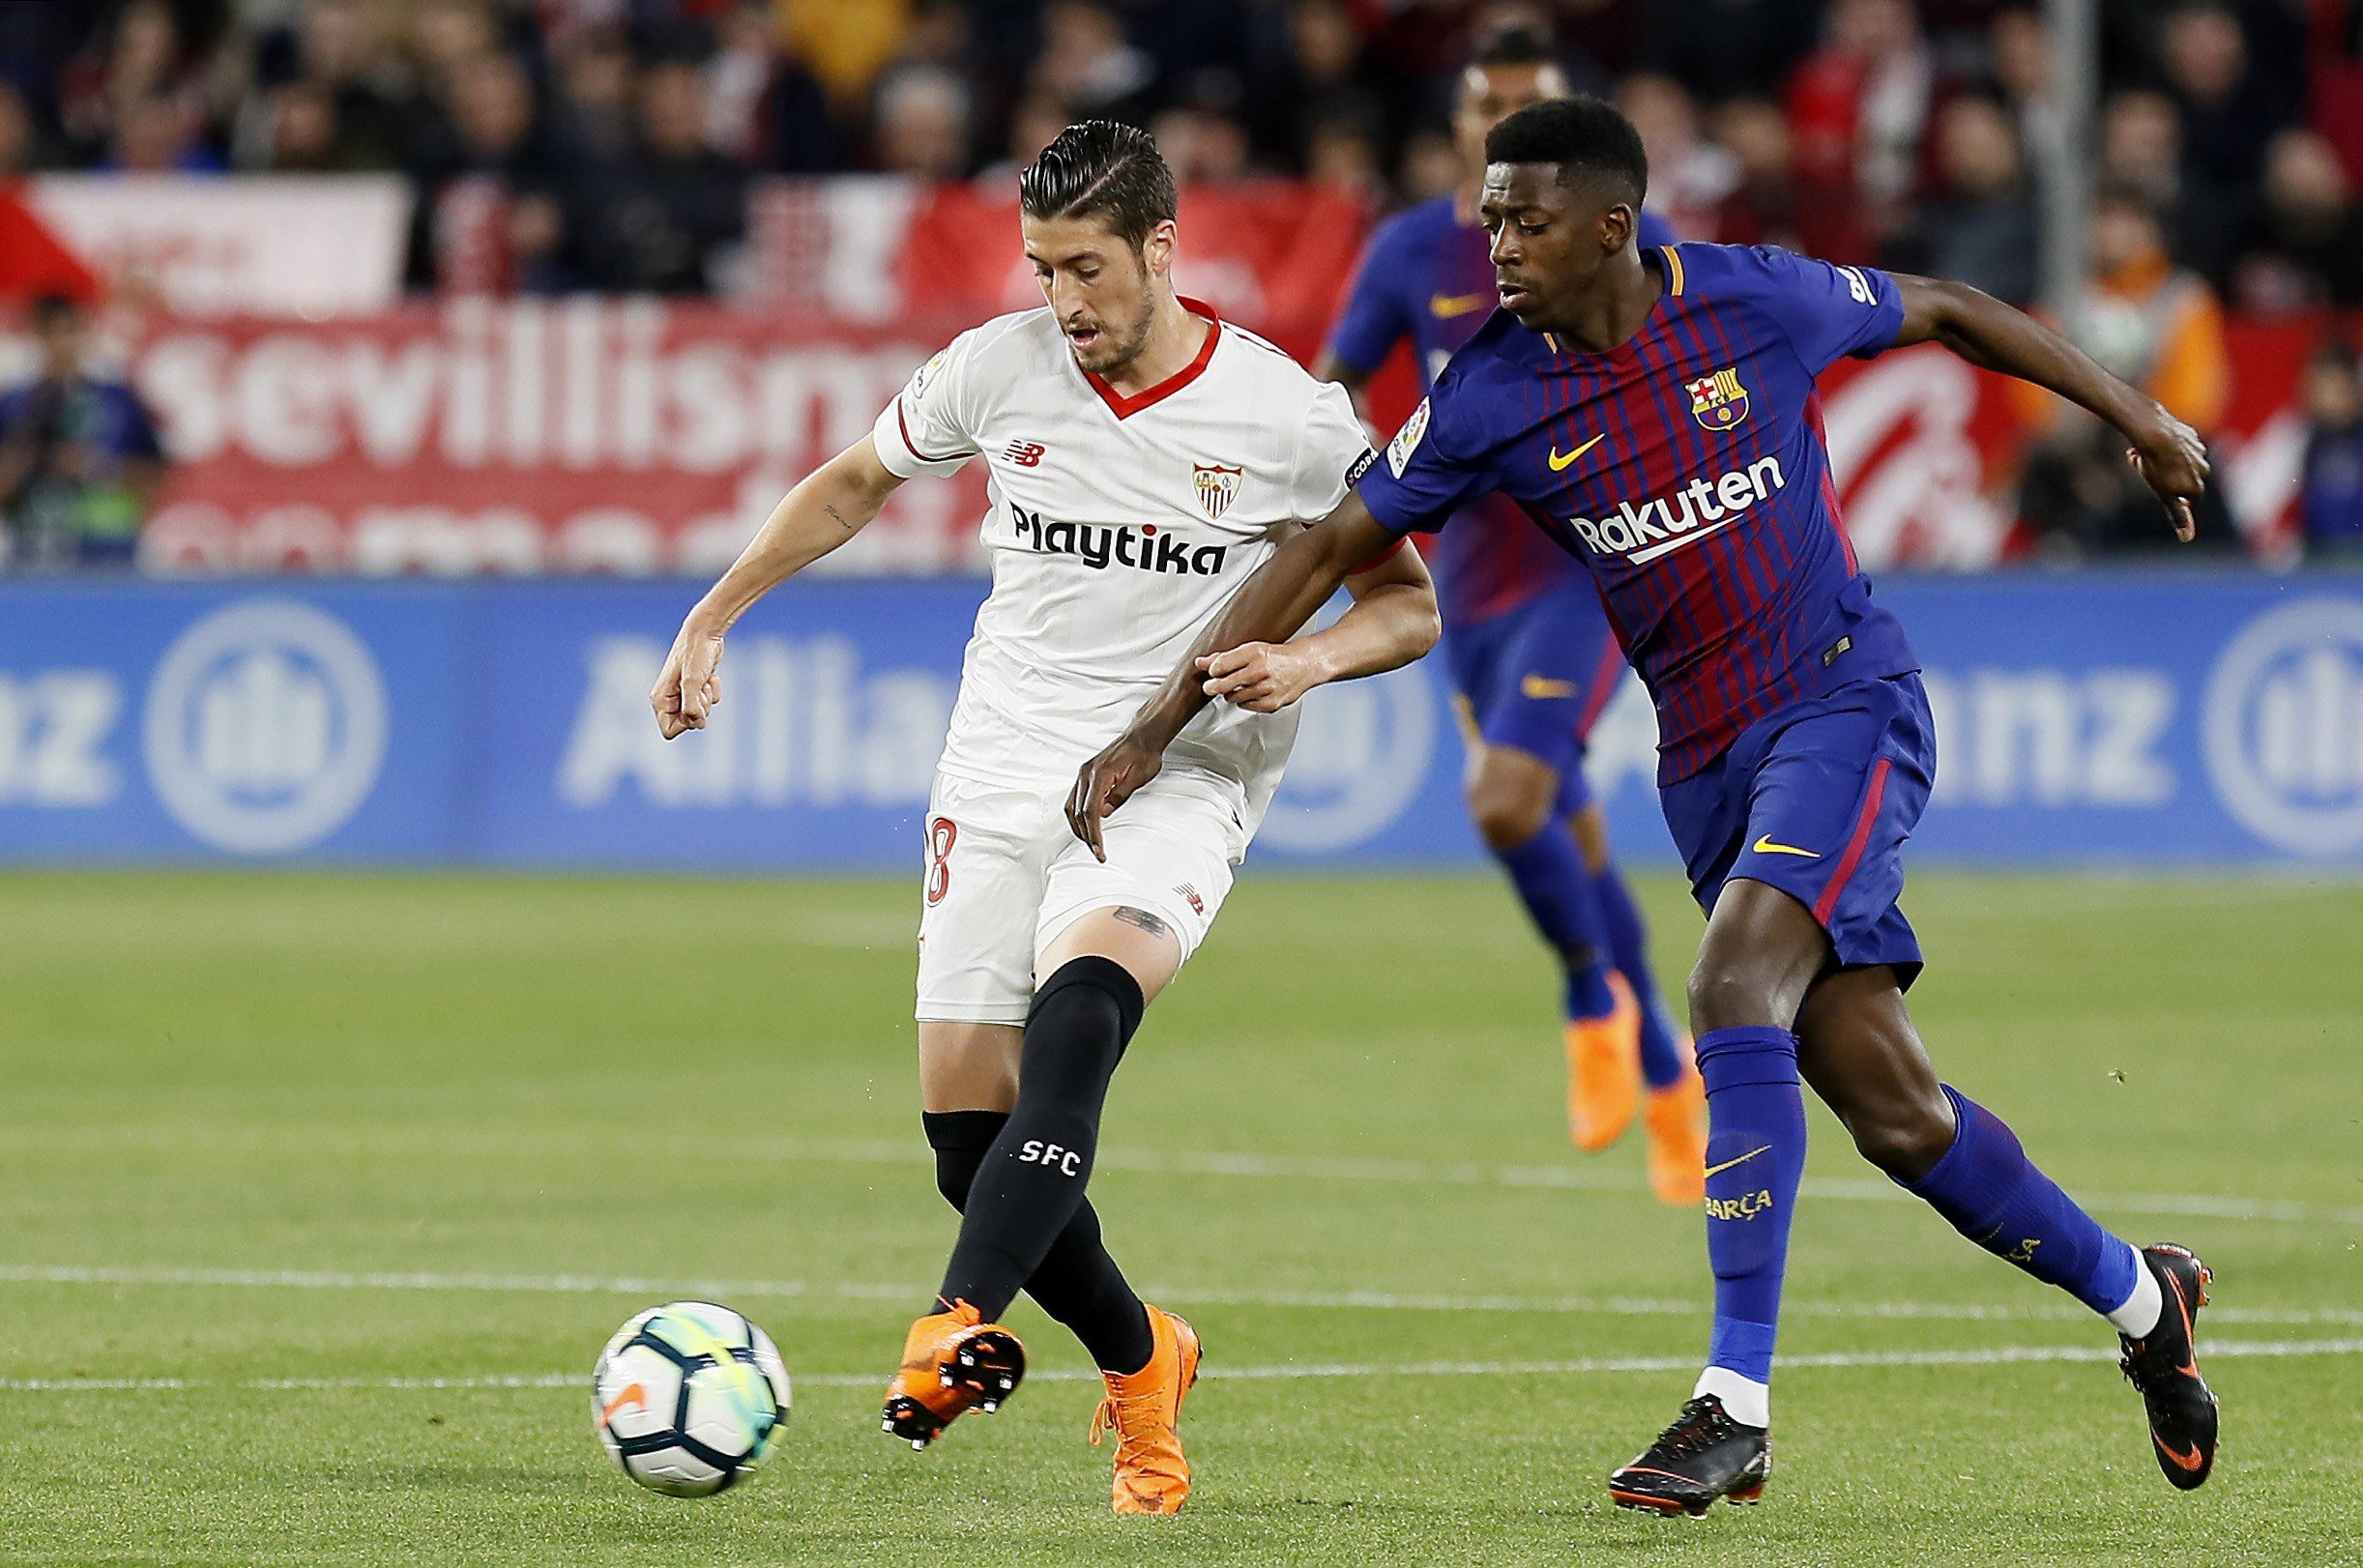 El amenazante mensaje del Sevilla al Barça por el asunto Supercopa